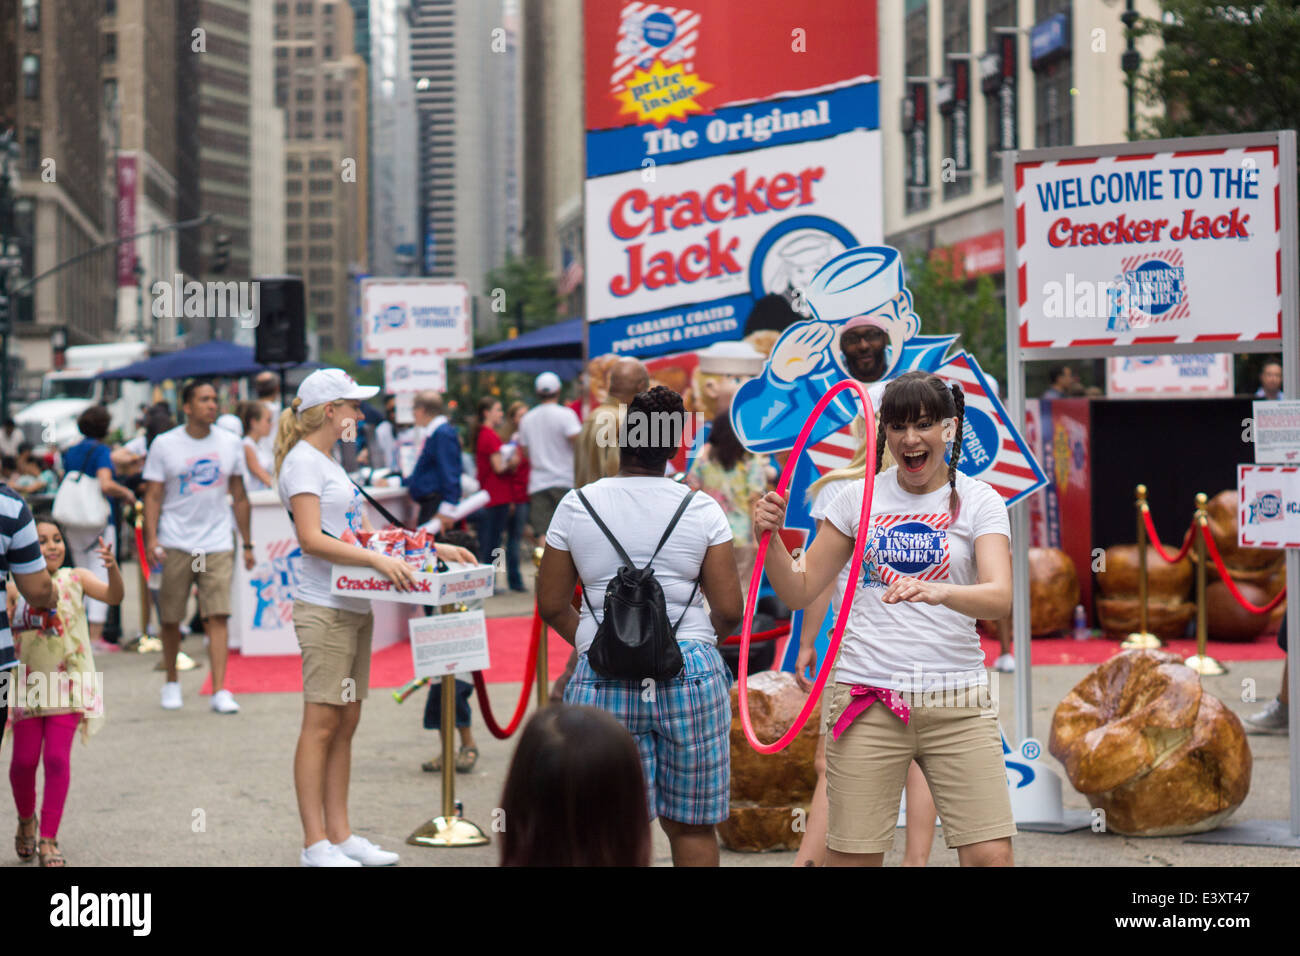 Un événement promotionnel pour l'emblématique snack-Cracker Jack intitulée "La surprise à l'intérieur projet' est assisté par des foules à New York Banque D'Images